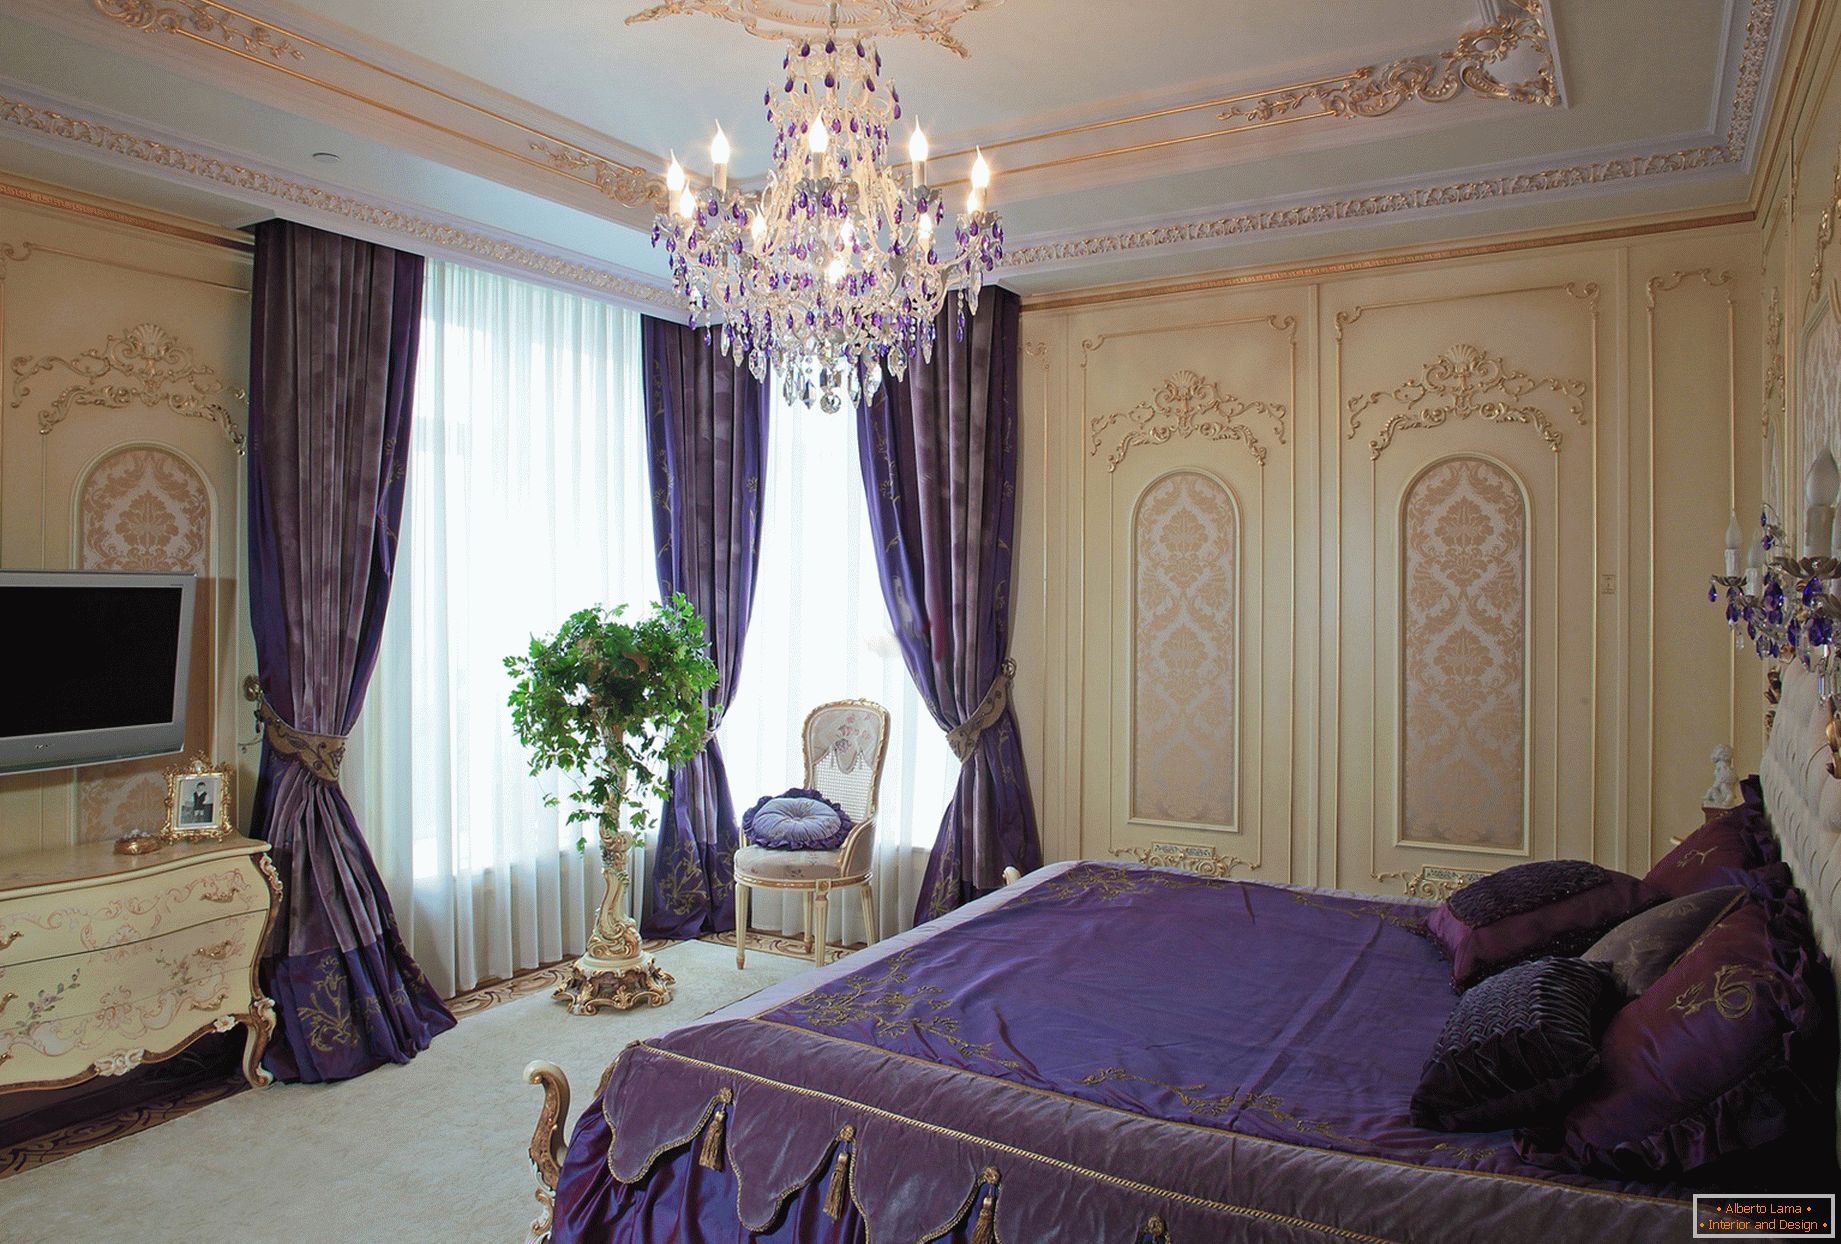 Stylowa sypialnia w stylu barokowym. Subtelna koncepcja projektu - ciemnofioletowe zasłony są łączone z dopasowanym odcieniem pościeli.